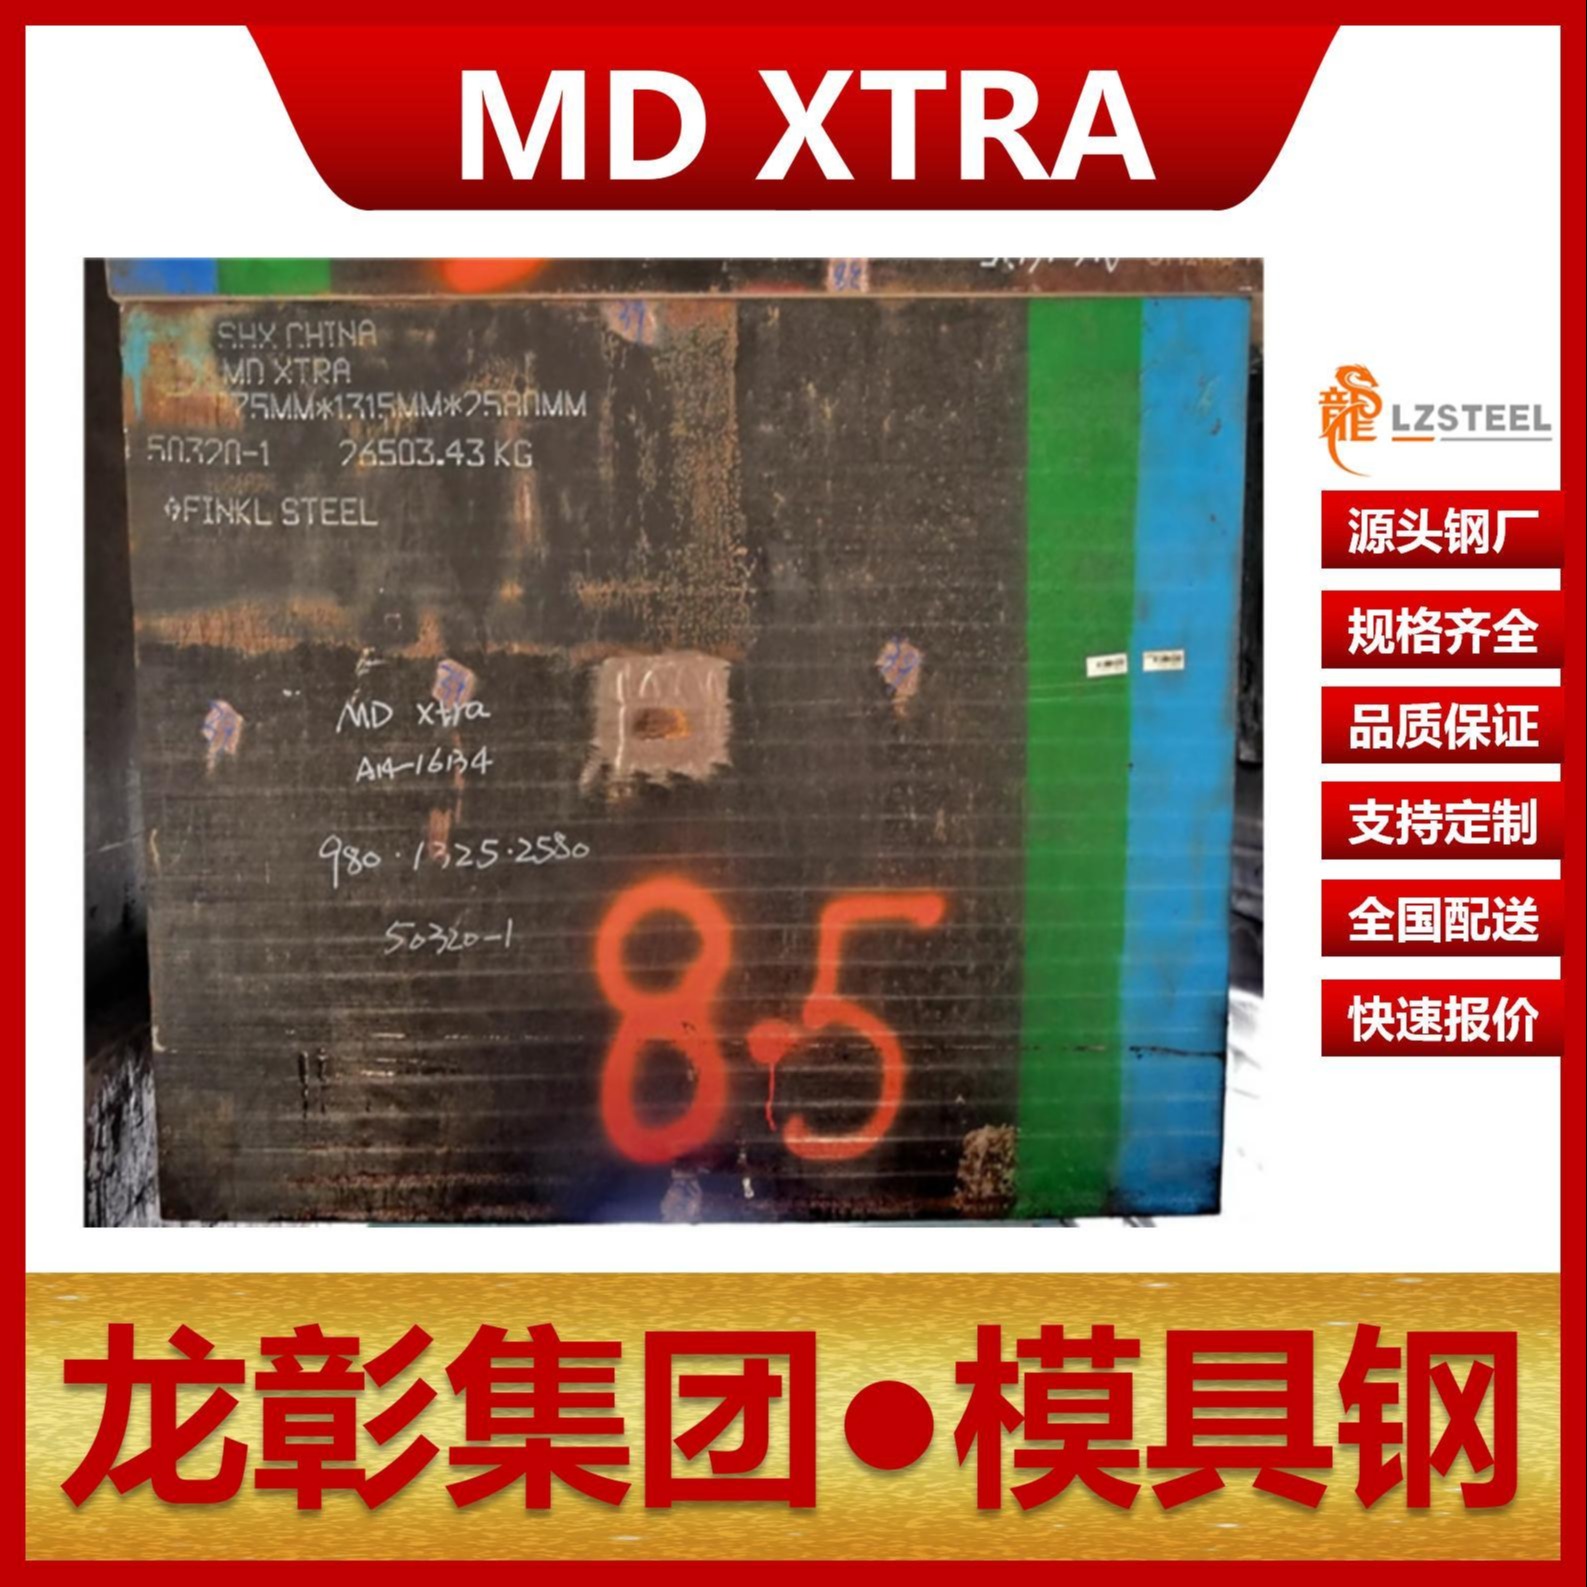 芬可乐MD XTRA模具钢现货批零 进口MD XTRA扁钢圆棒模具钢龙彰集团